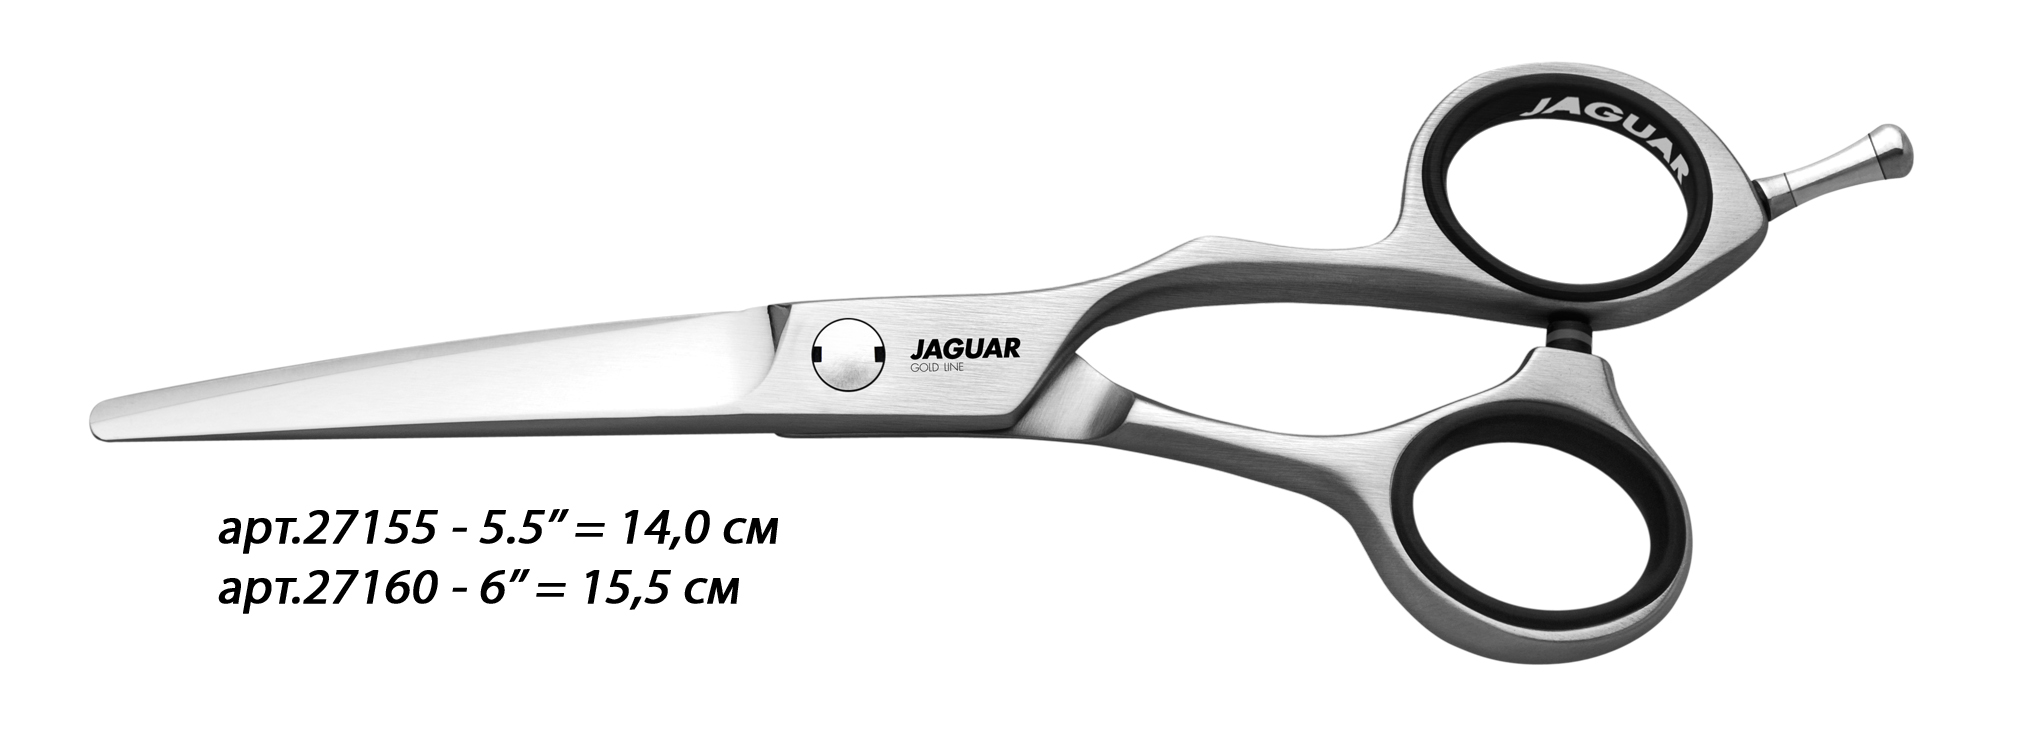 JAGUAR Ножницы Jaguar Xenox 6'(15,5cm)GL